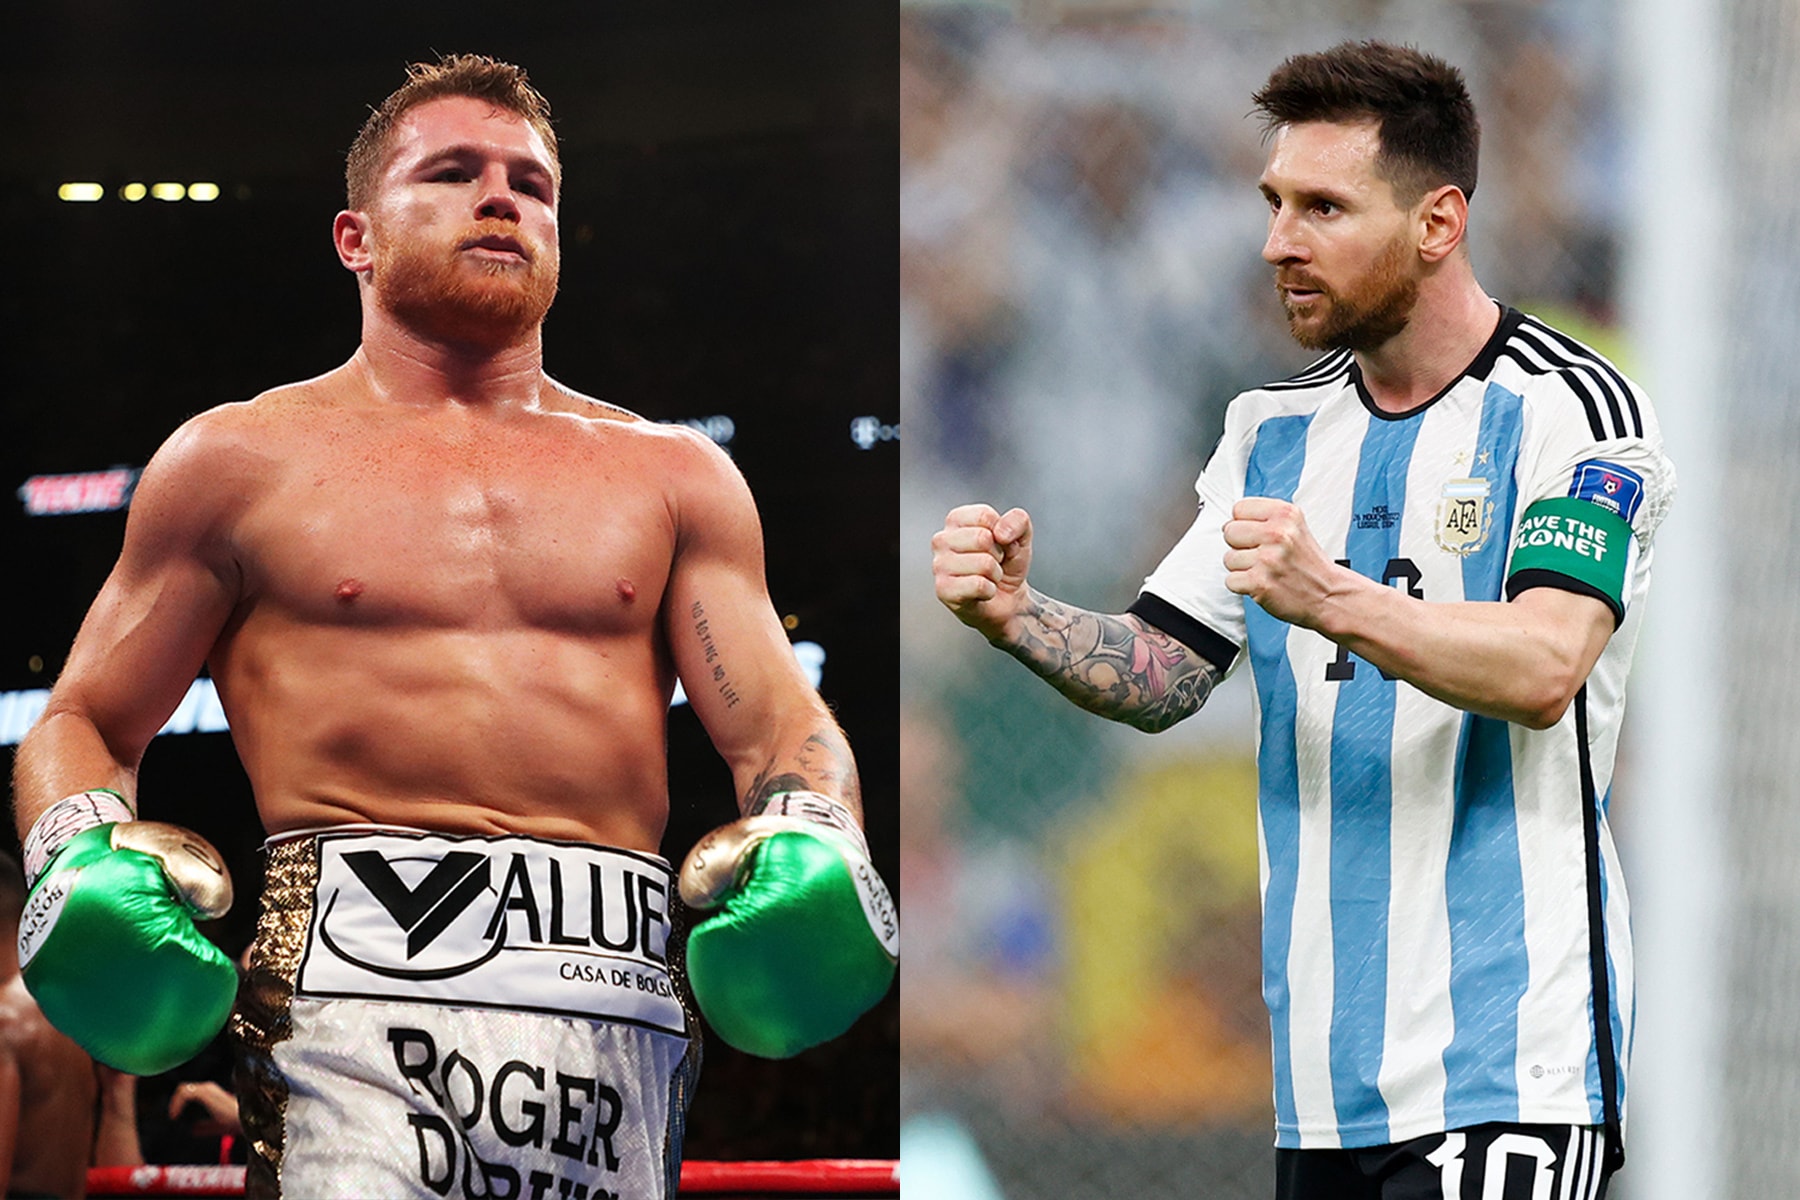 2022 世界盃 – 拳王 Canelo Alvarez 批評 Lionel Messi 不尊重墨西哥